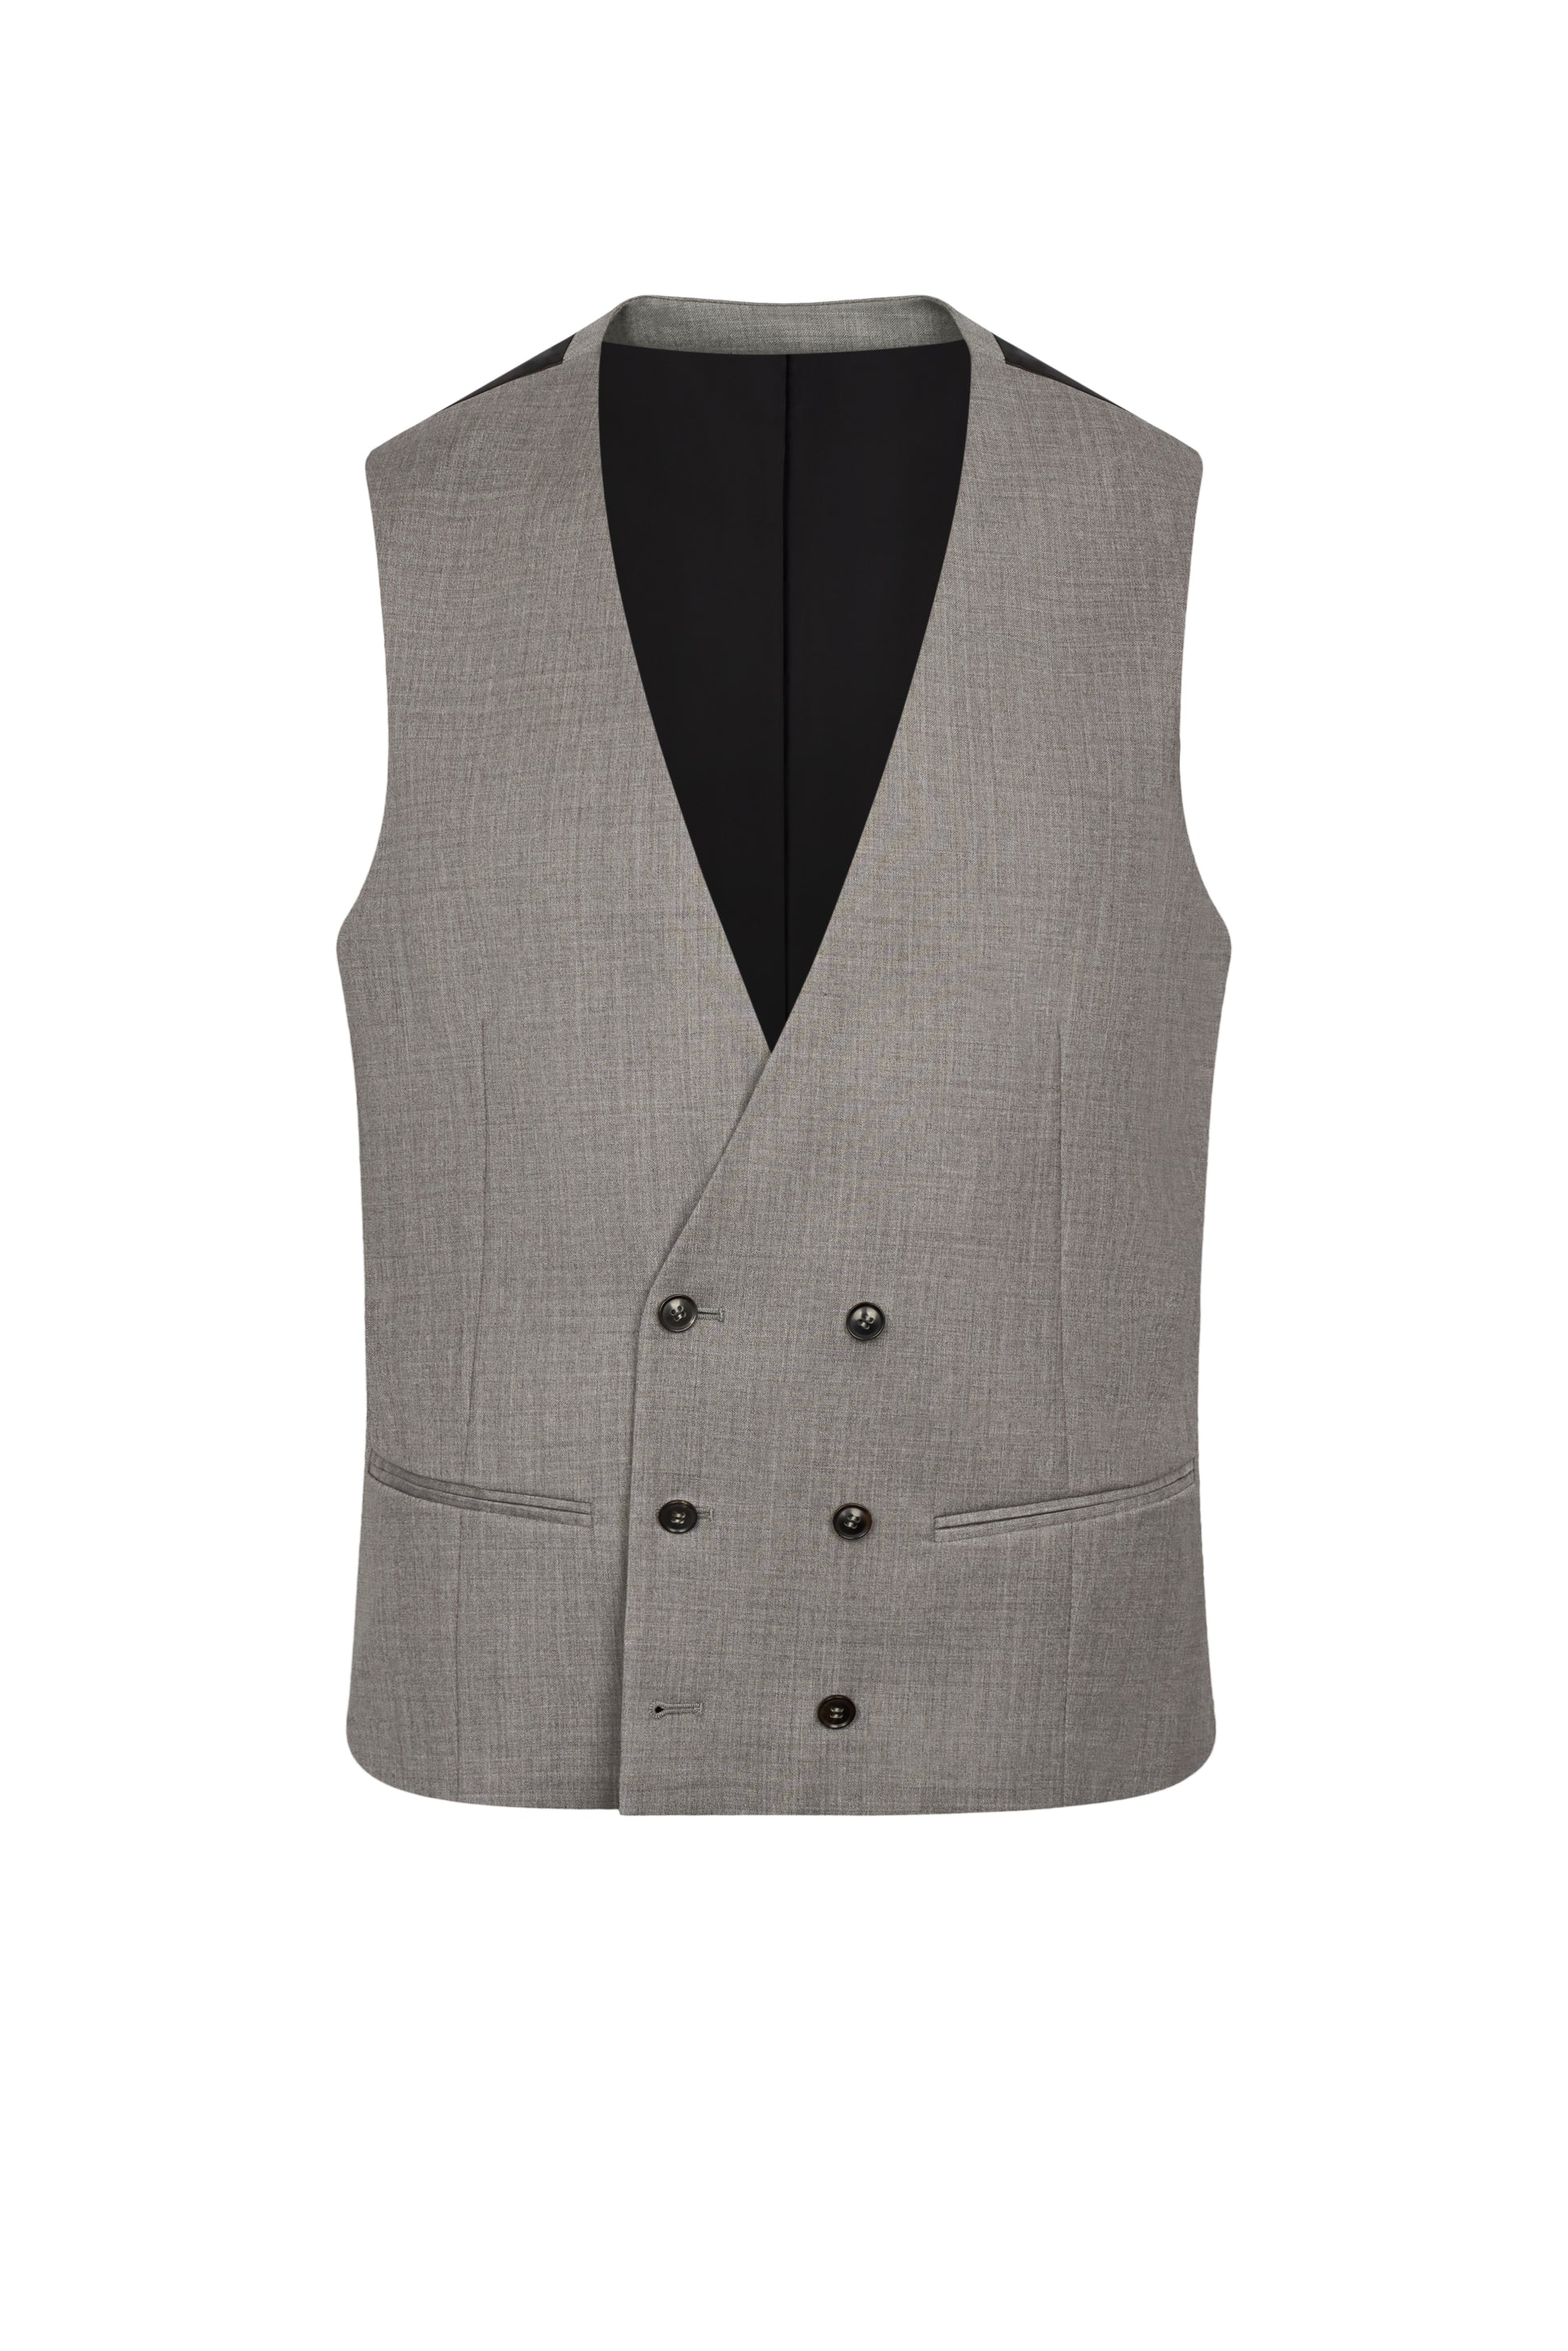 Steel Grey Twill Waistcoat